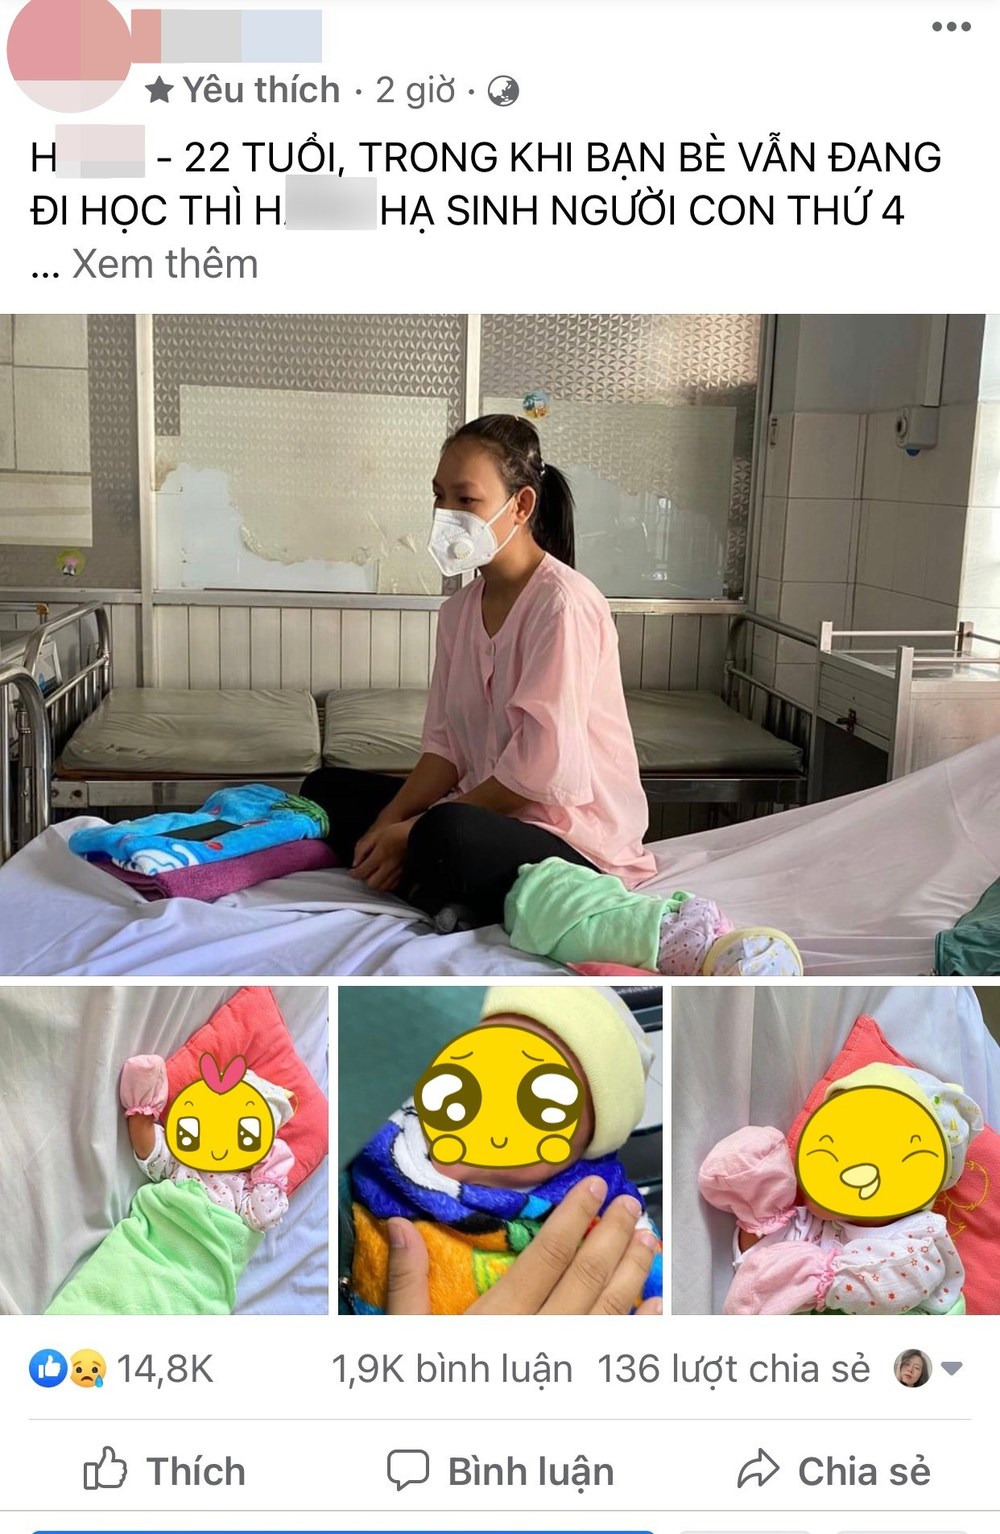  
Bài đăng về mẹ trẻ sinh 4 đứa con, chồng bỏ đi thu hút sự chú ý của cư dân mạng (Ảnh chụp màn hình: BeatVN)